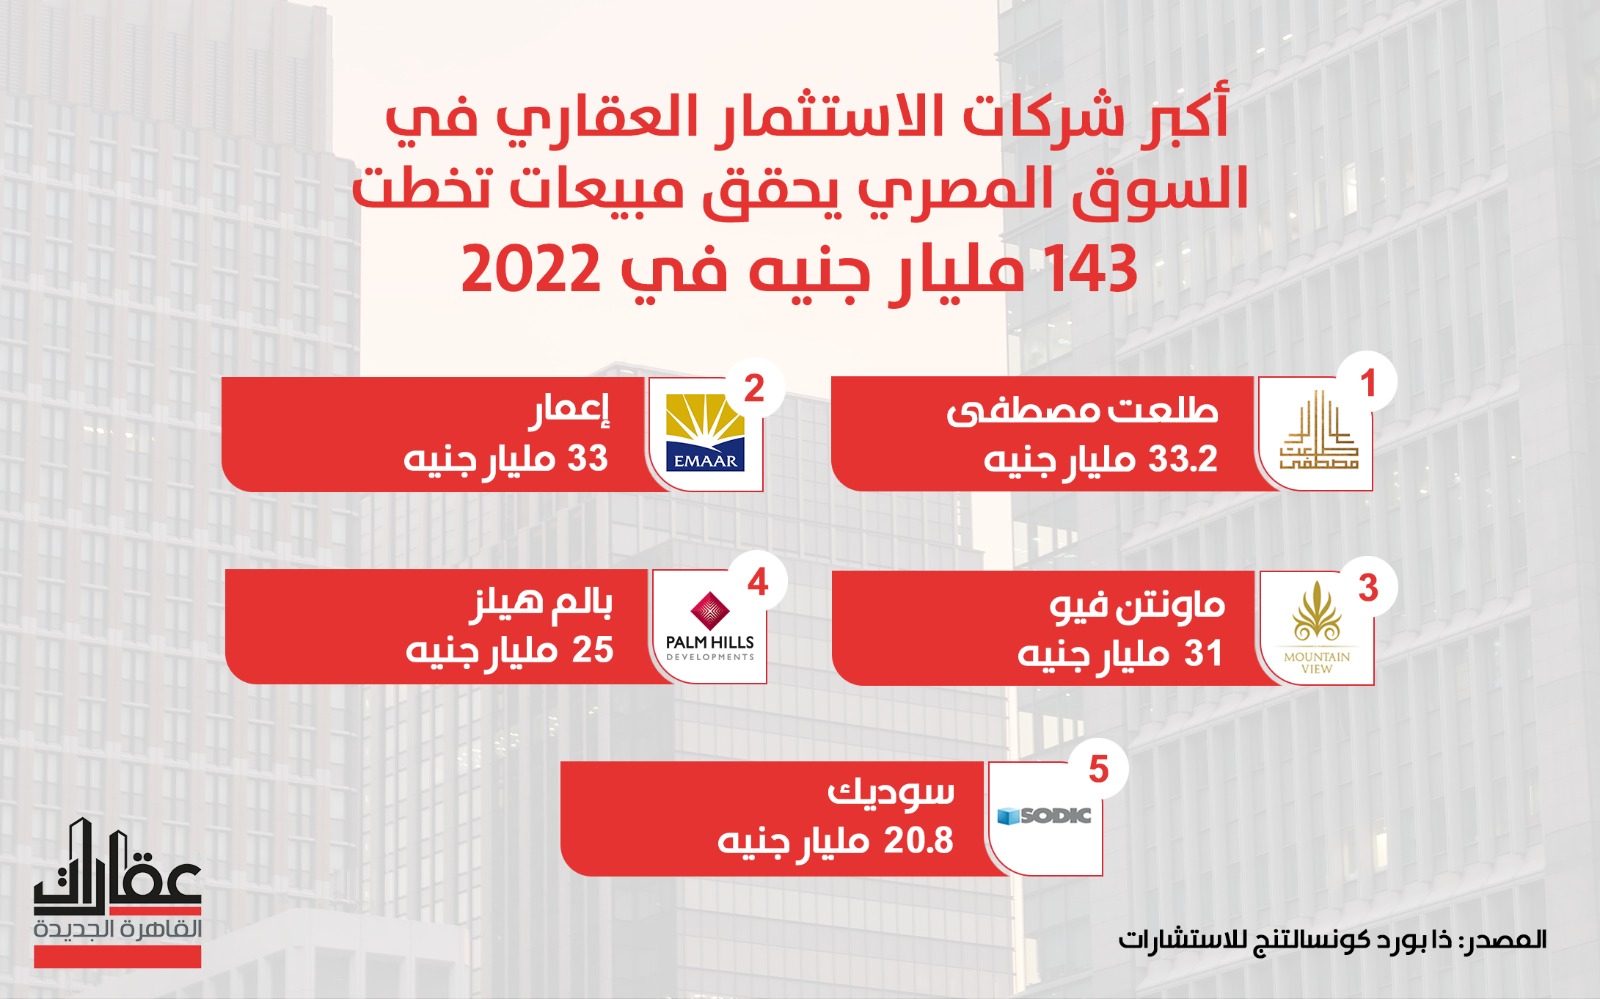 بالأرقام.. مبيعات أكبر 5 مطورين عقاريين في مصر خلال 2022